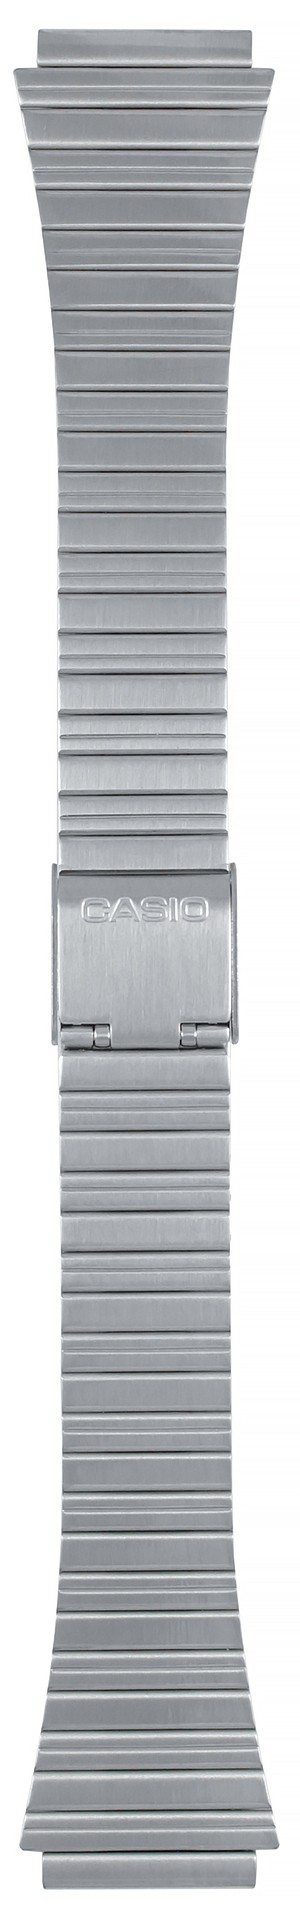 Браслет для часов Casio DB-520A (цвет: Серебряный, материал: Нержавеющая сталь) - купить в интернет-магазине Watchband.ru.